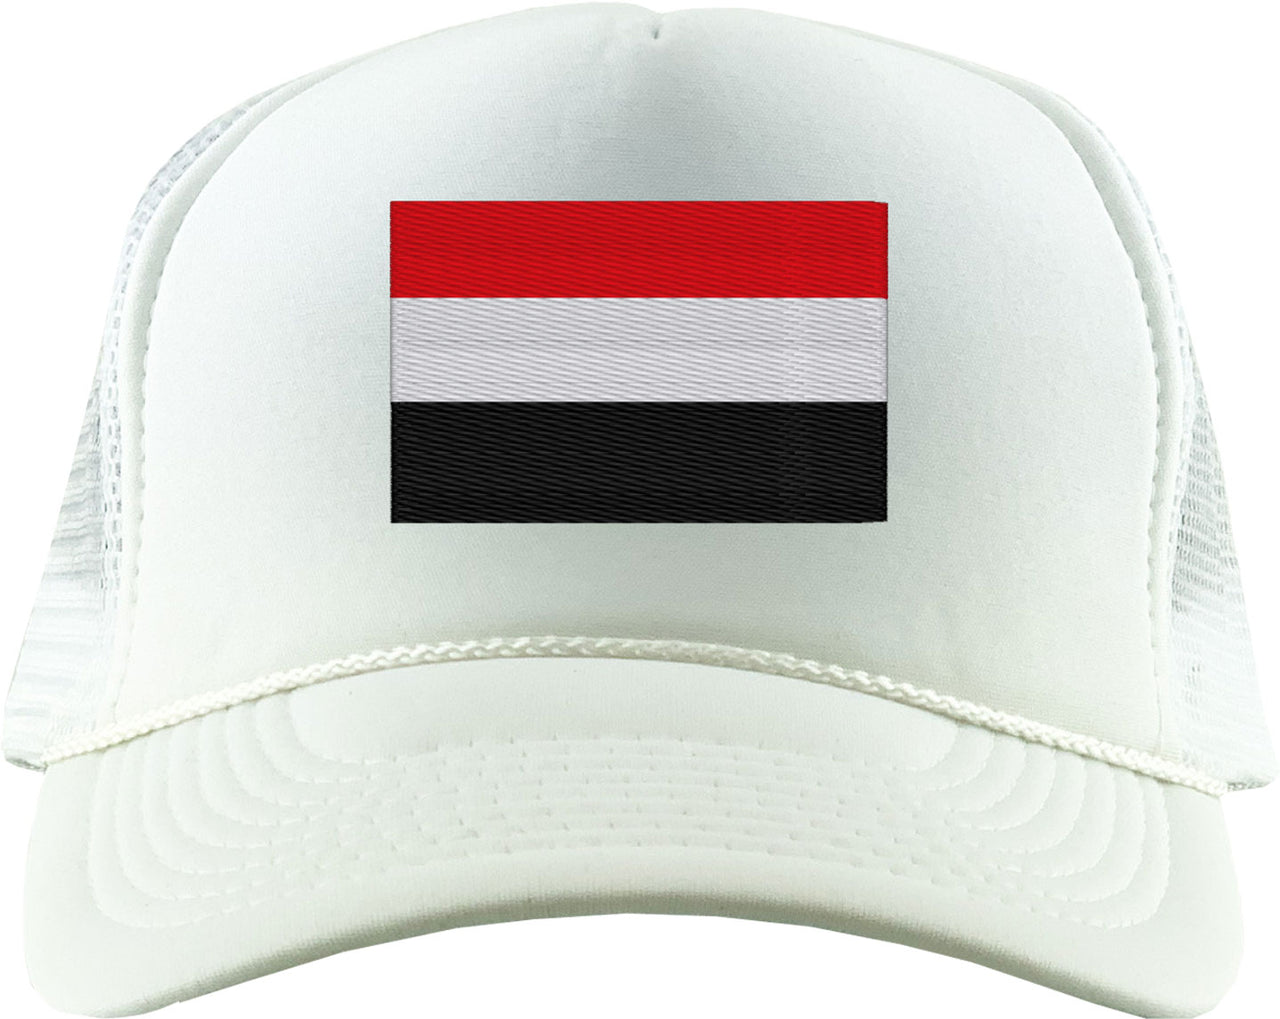 Yemen Flag Foam Trucker Hat